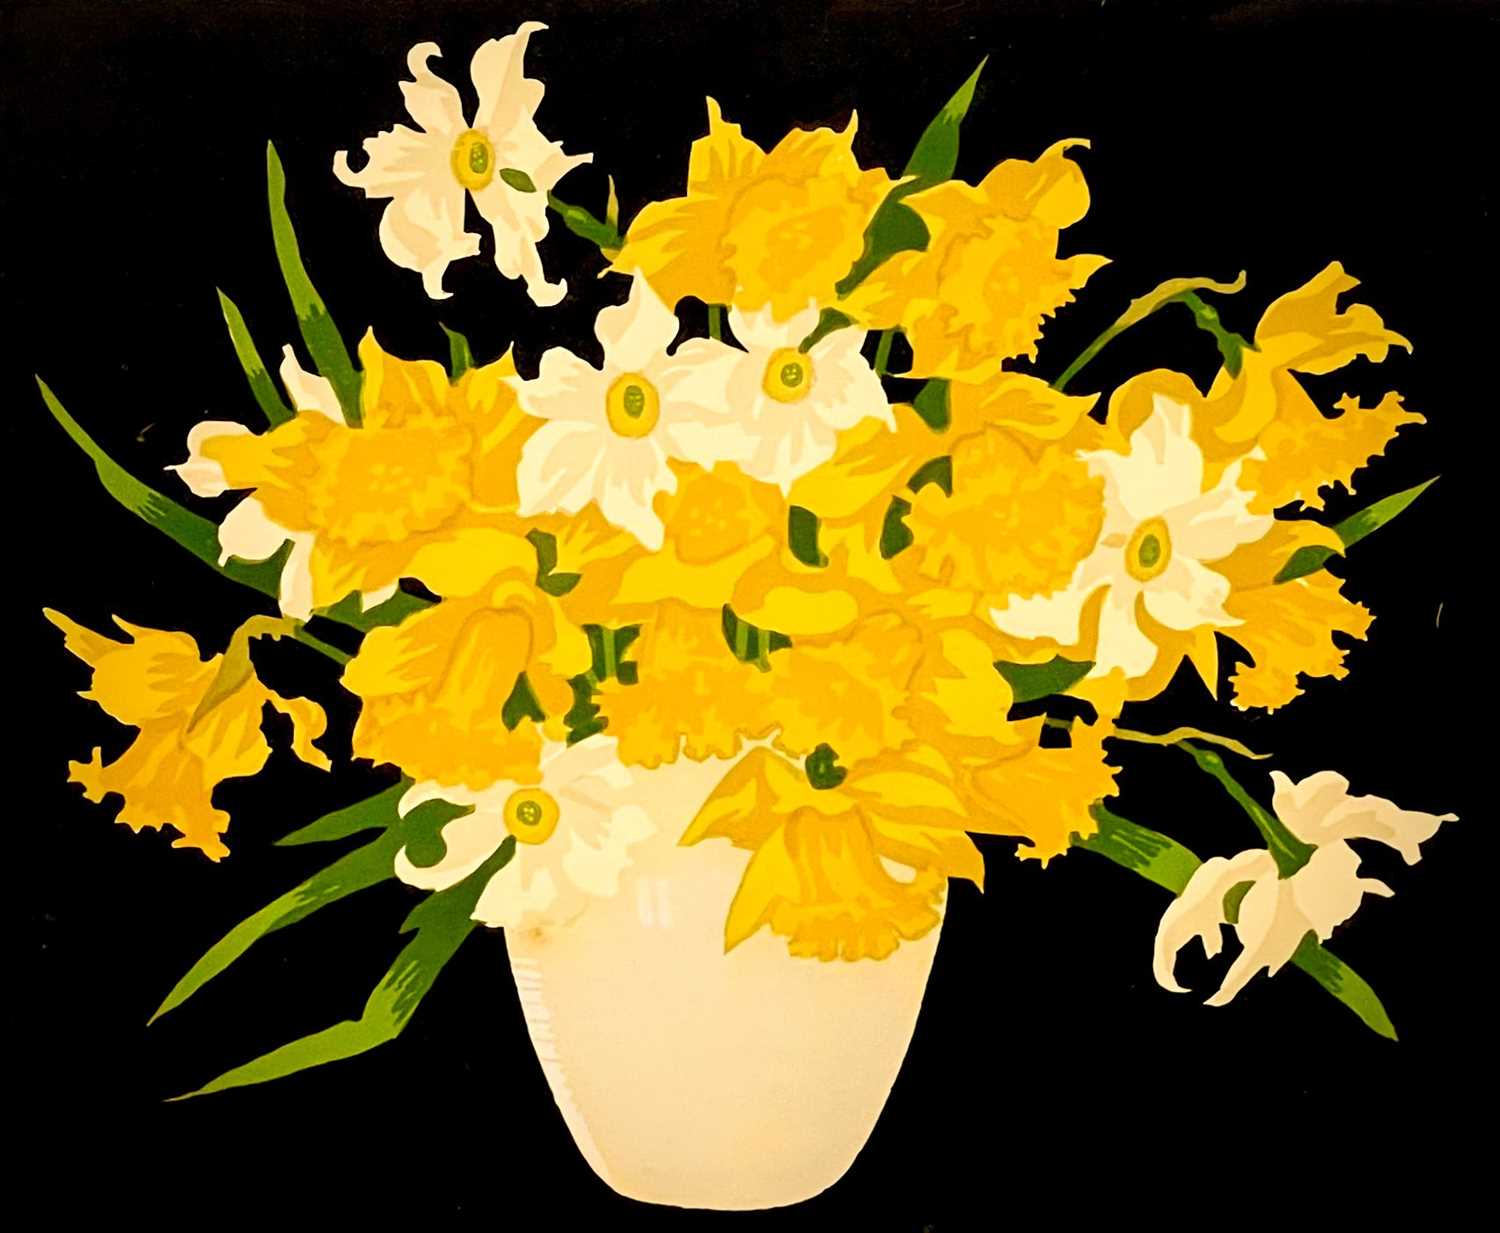 Thomas Todd BLAYLOCK (1876-1929) Daffodils